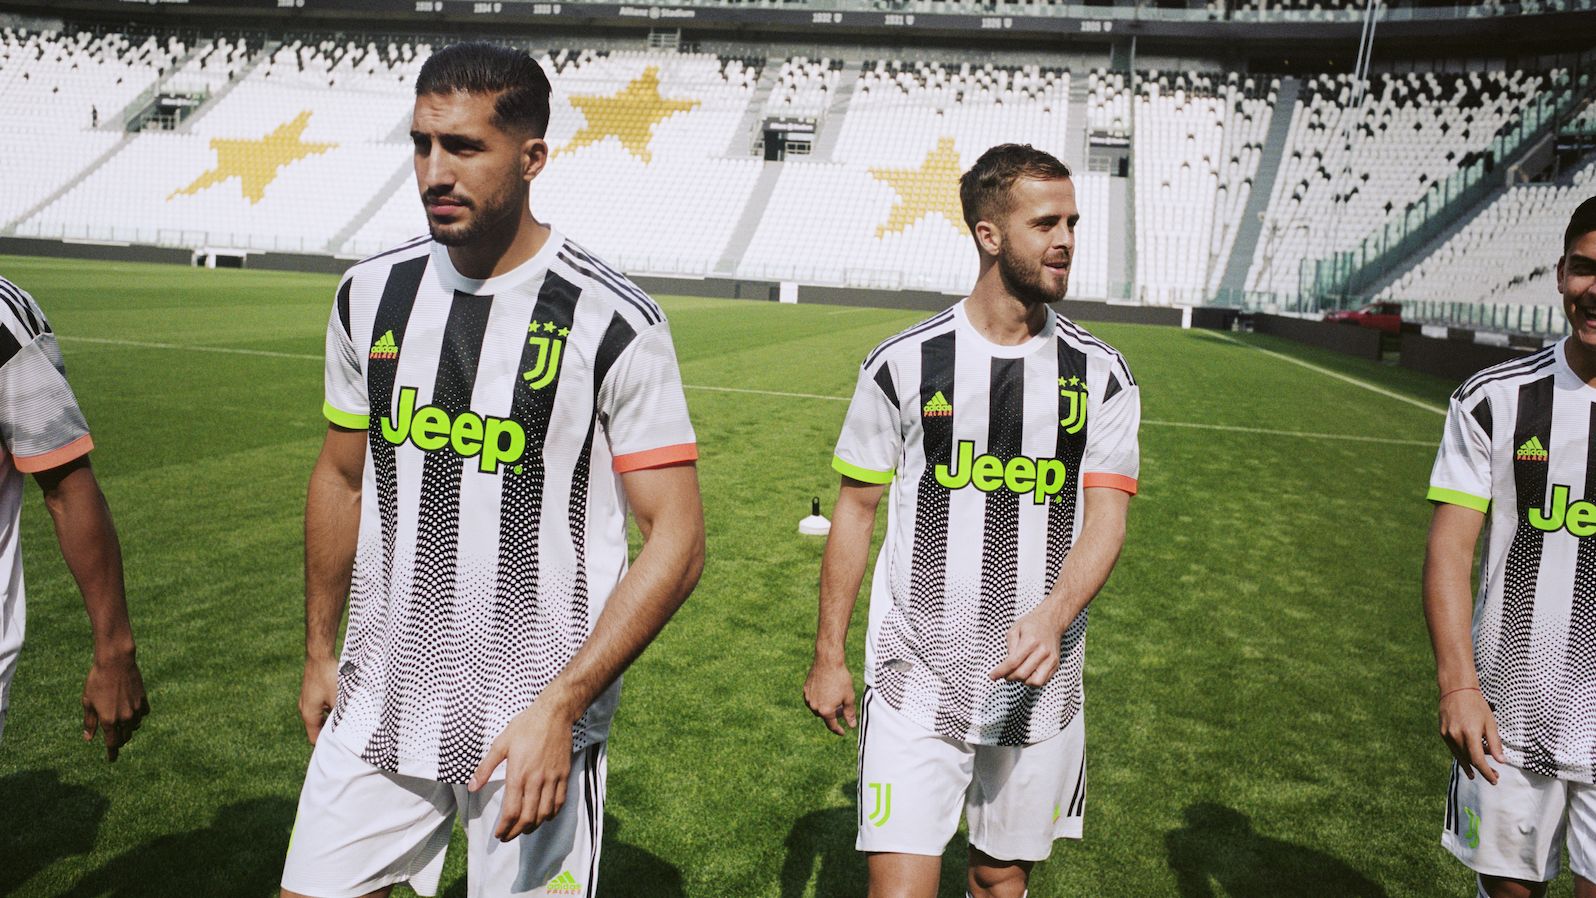 unos pocos Hacia fuera perdón Juventus collaborates with cult brand Palace | CNN